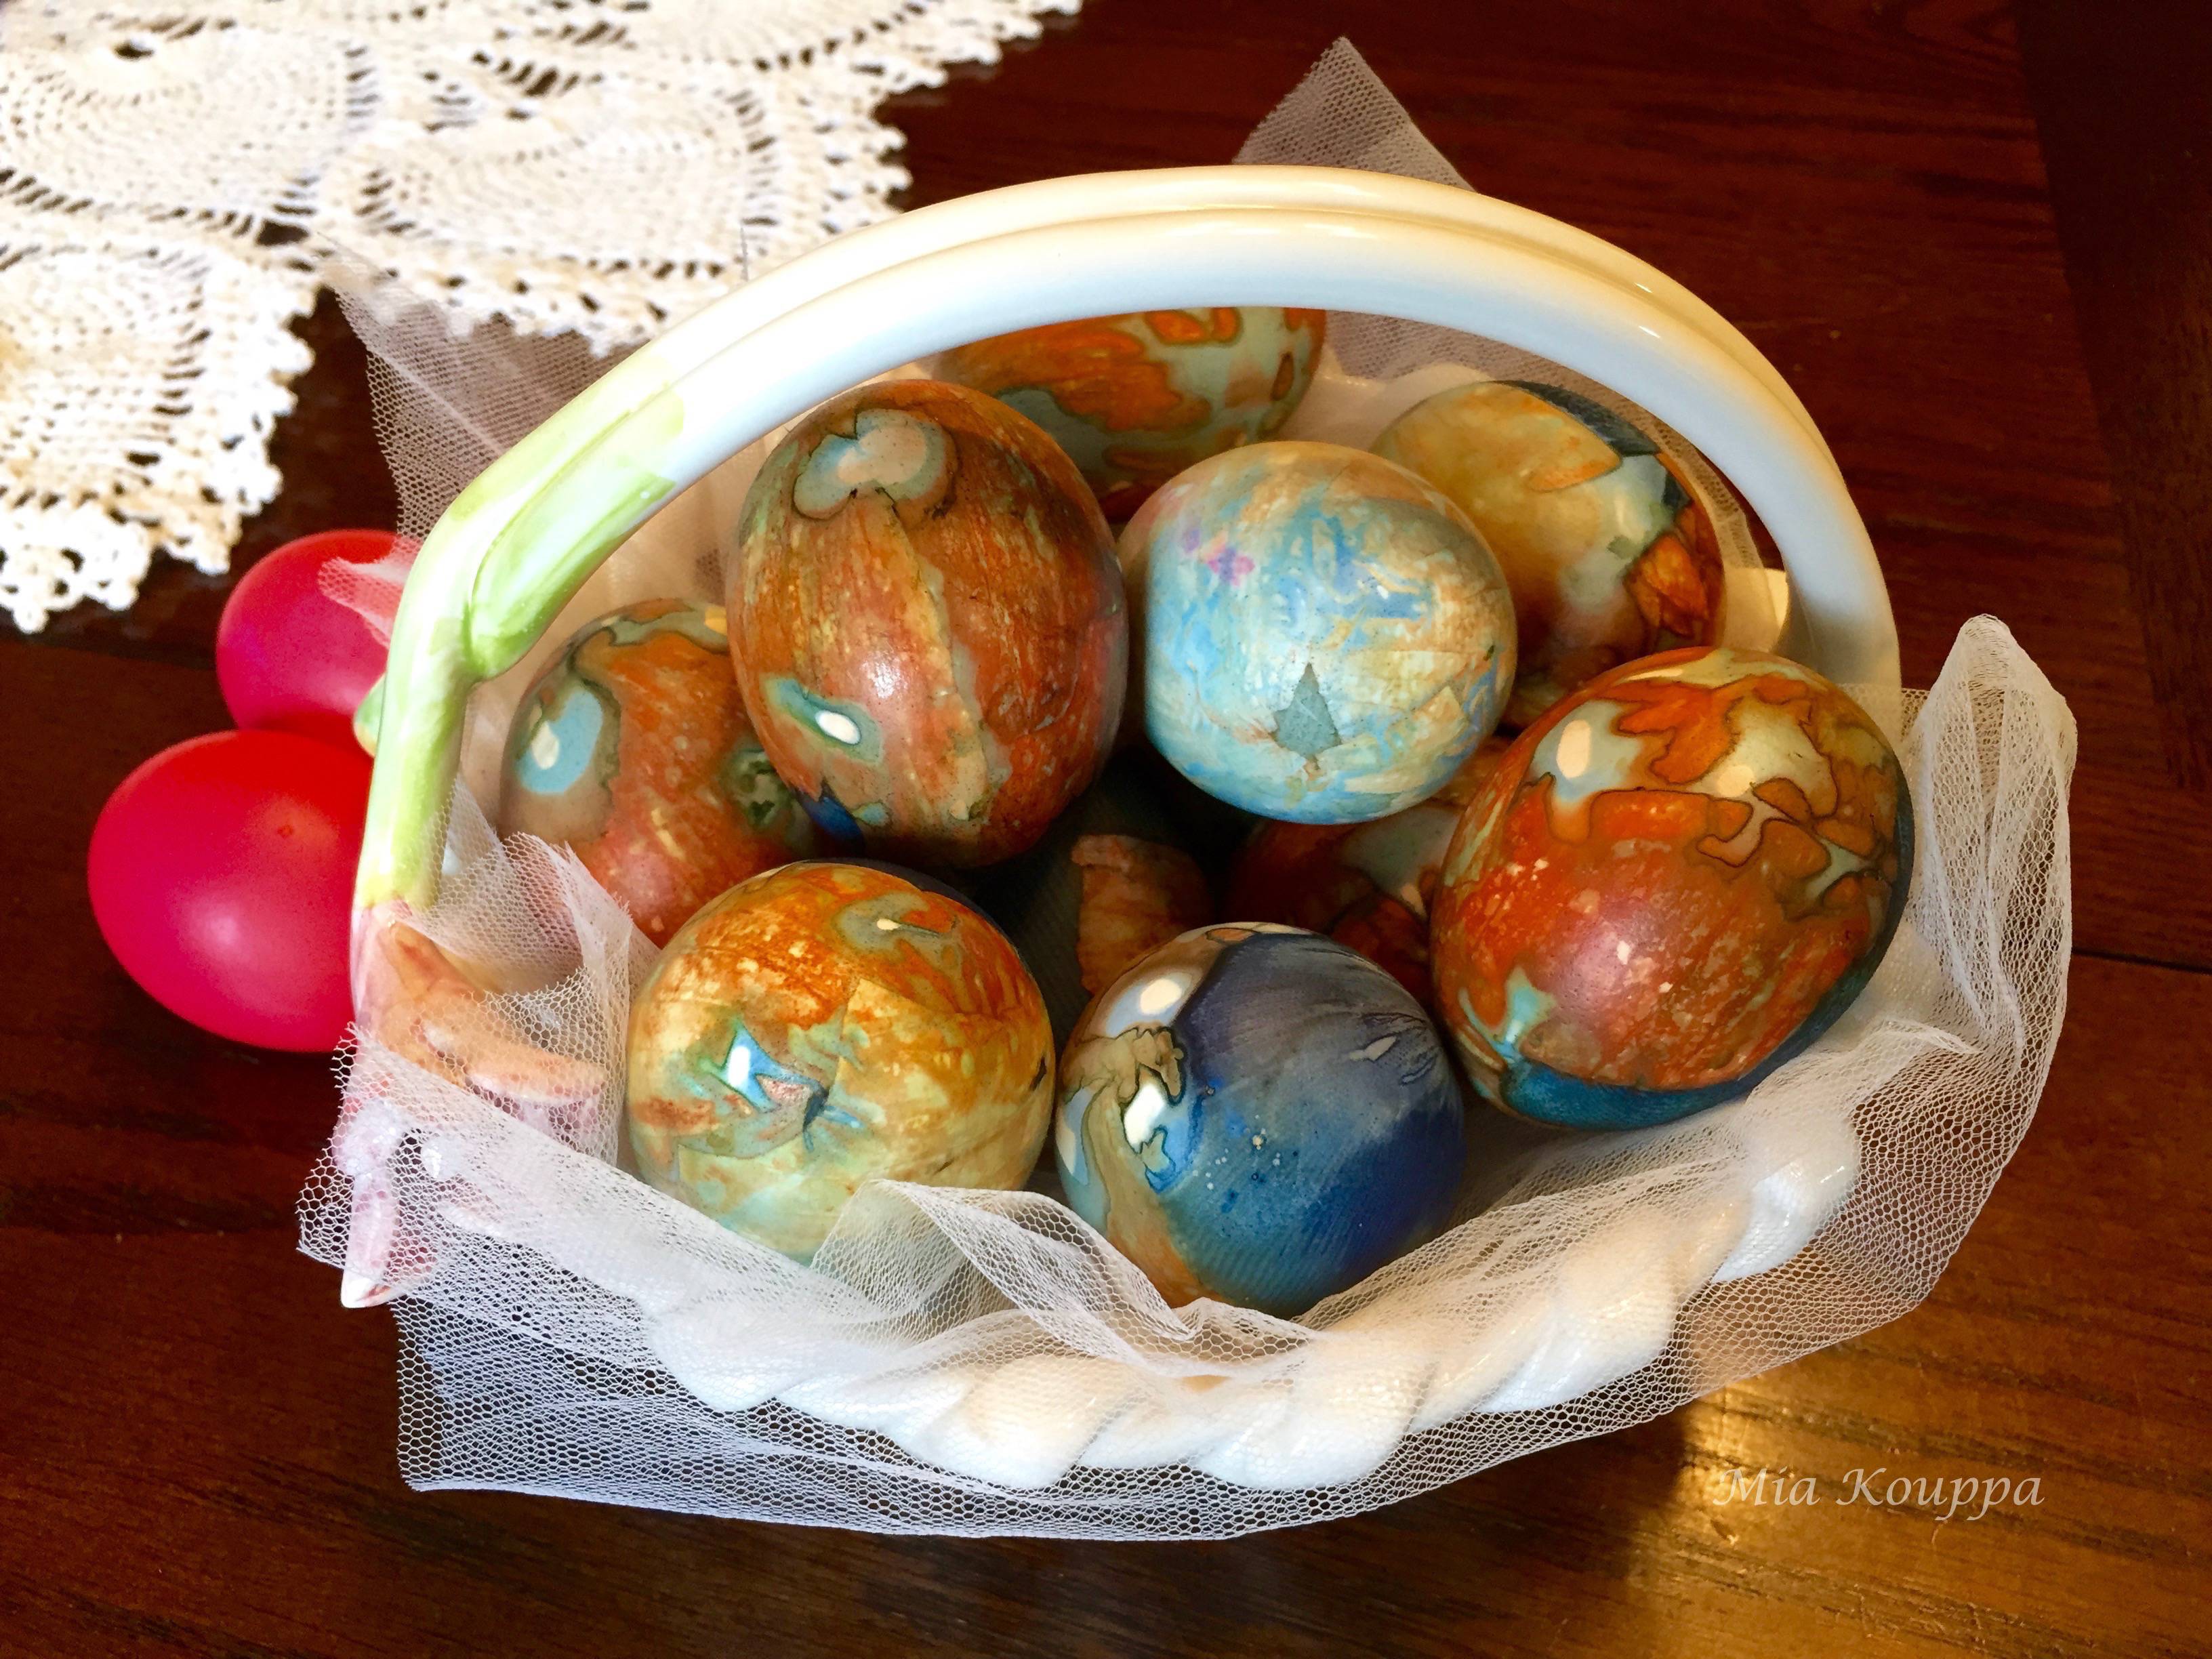 Greek Easter eggs